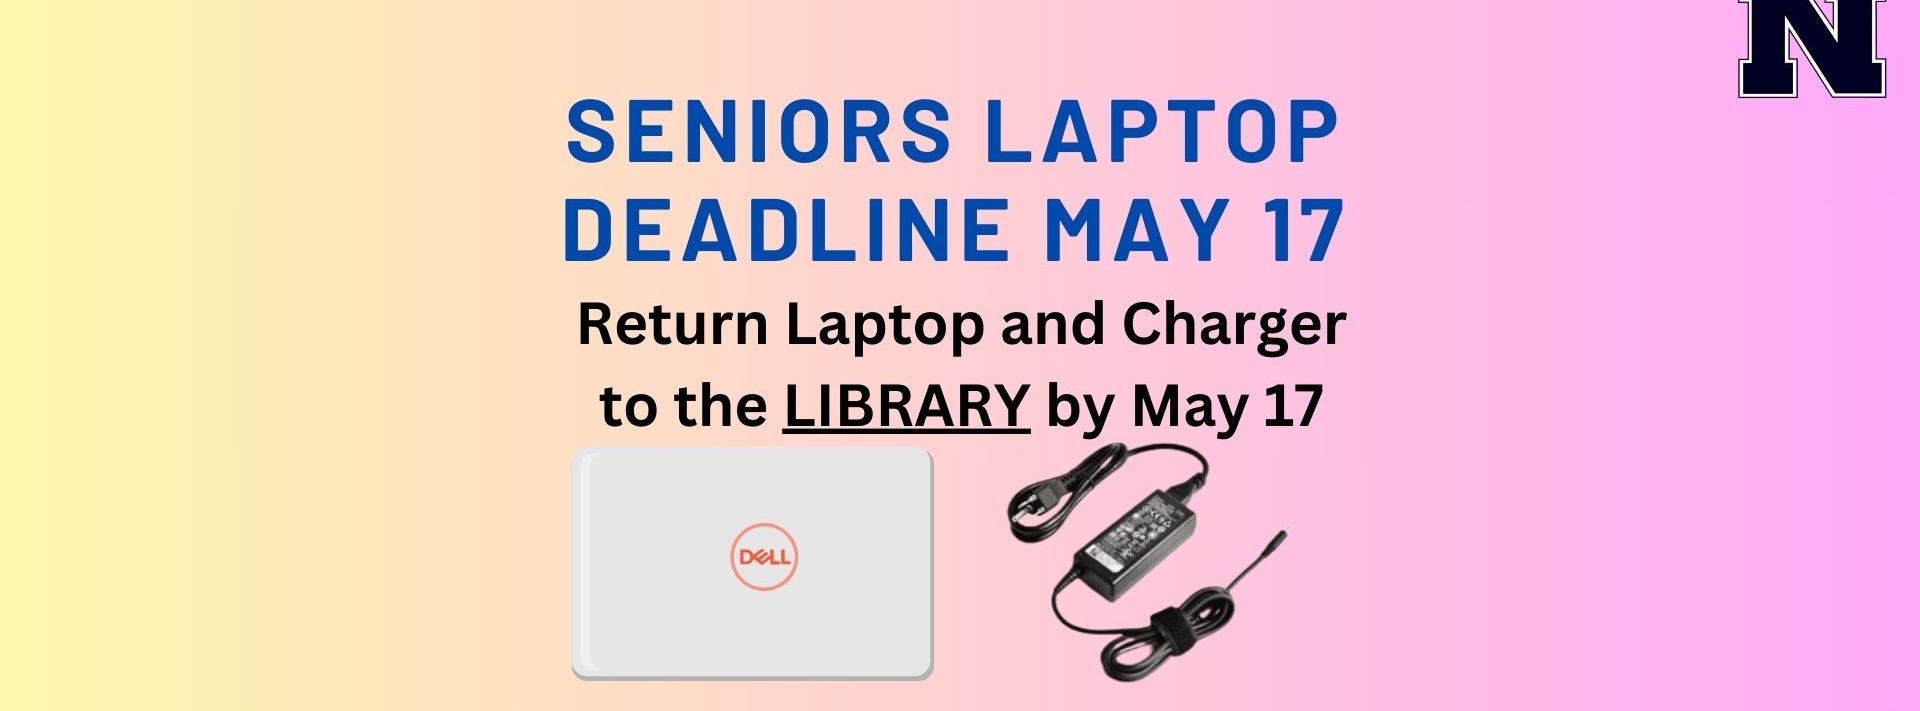 Senior Laptop Return Deadline May 17